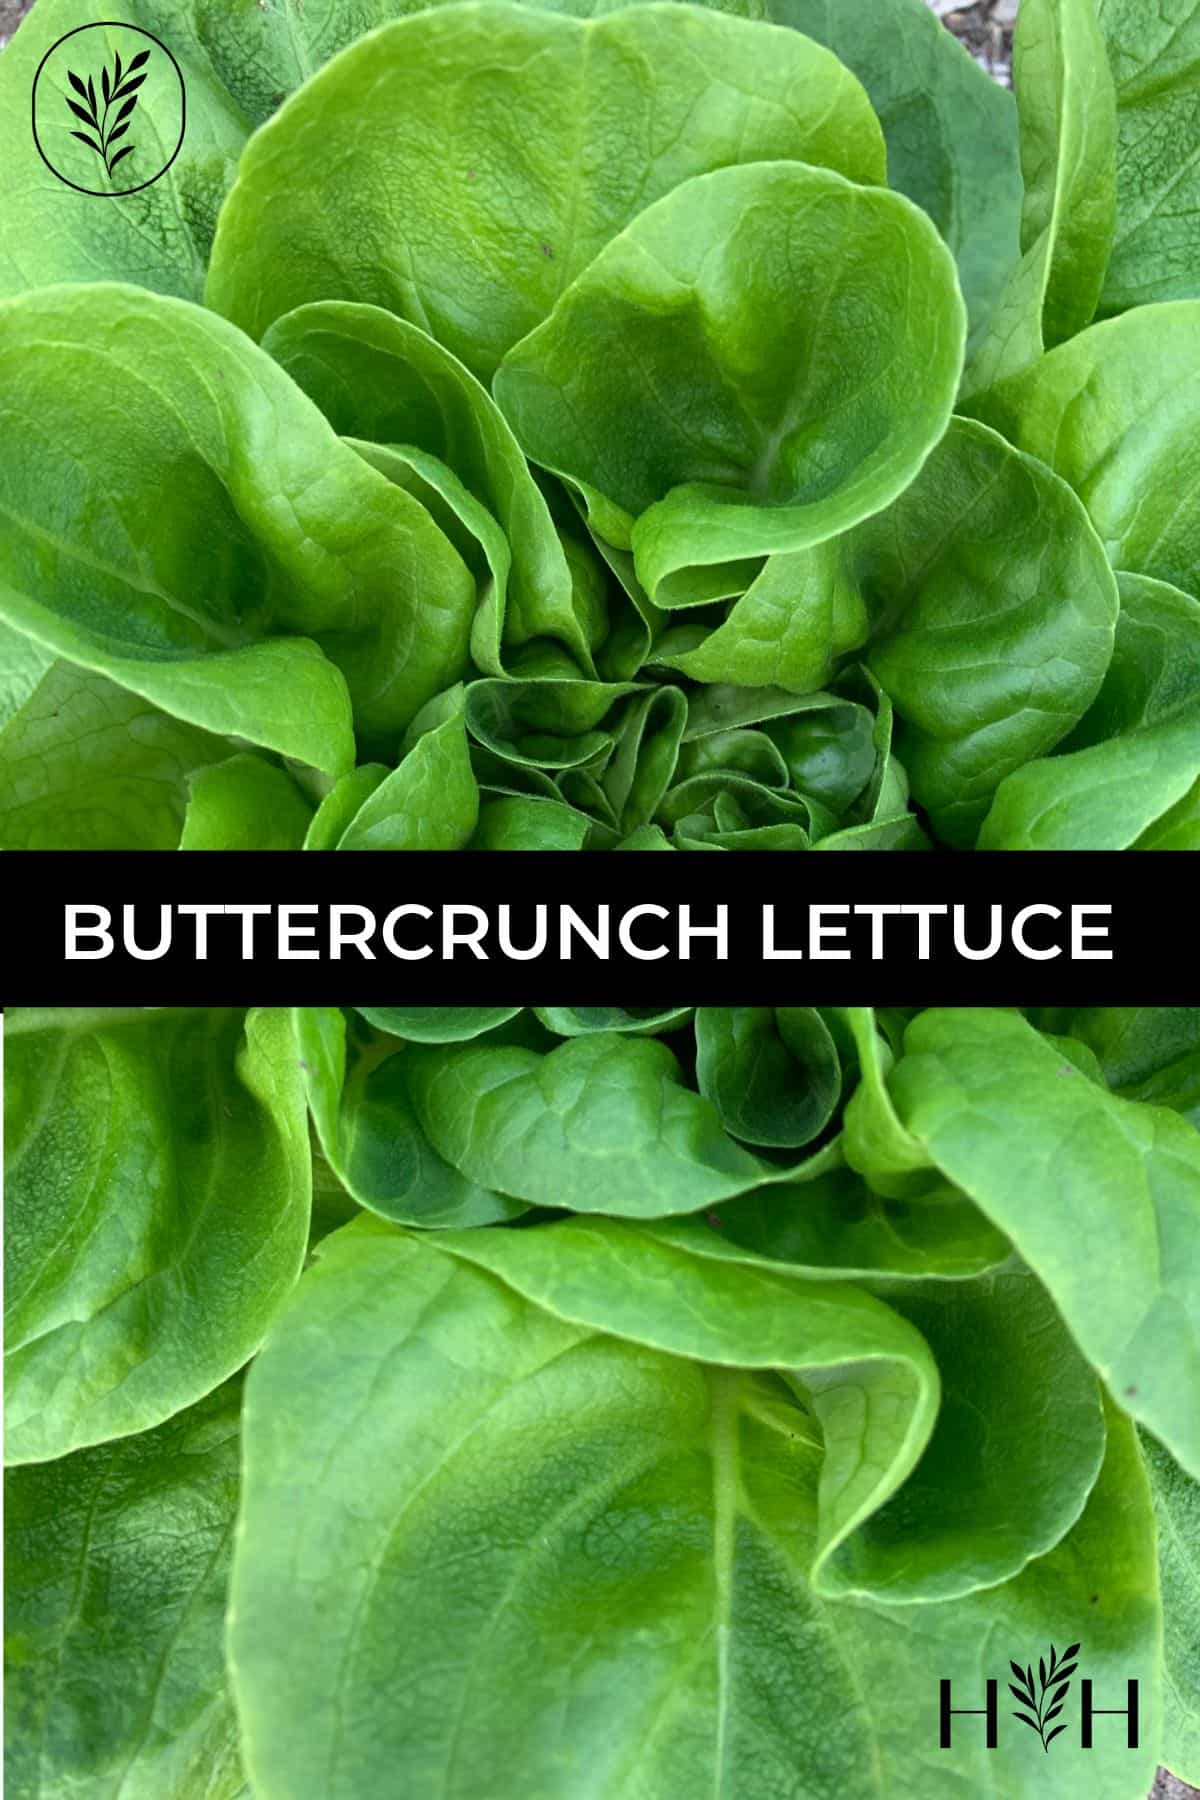 Buttercrunch lettuce via @home4theharvest